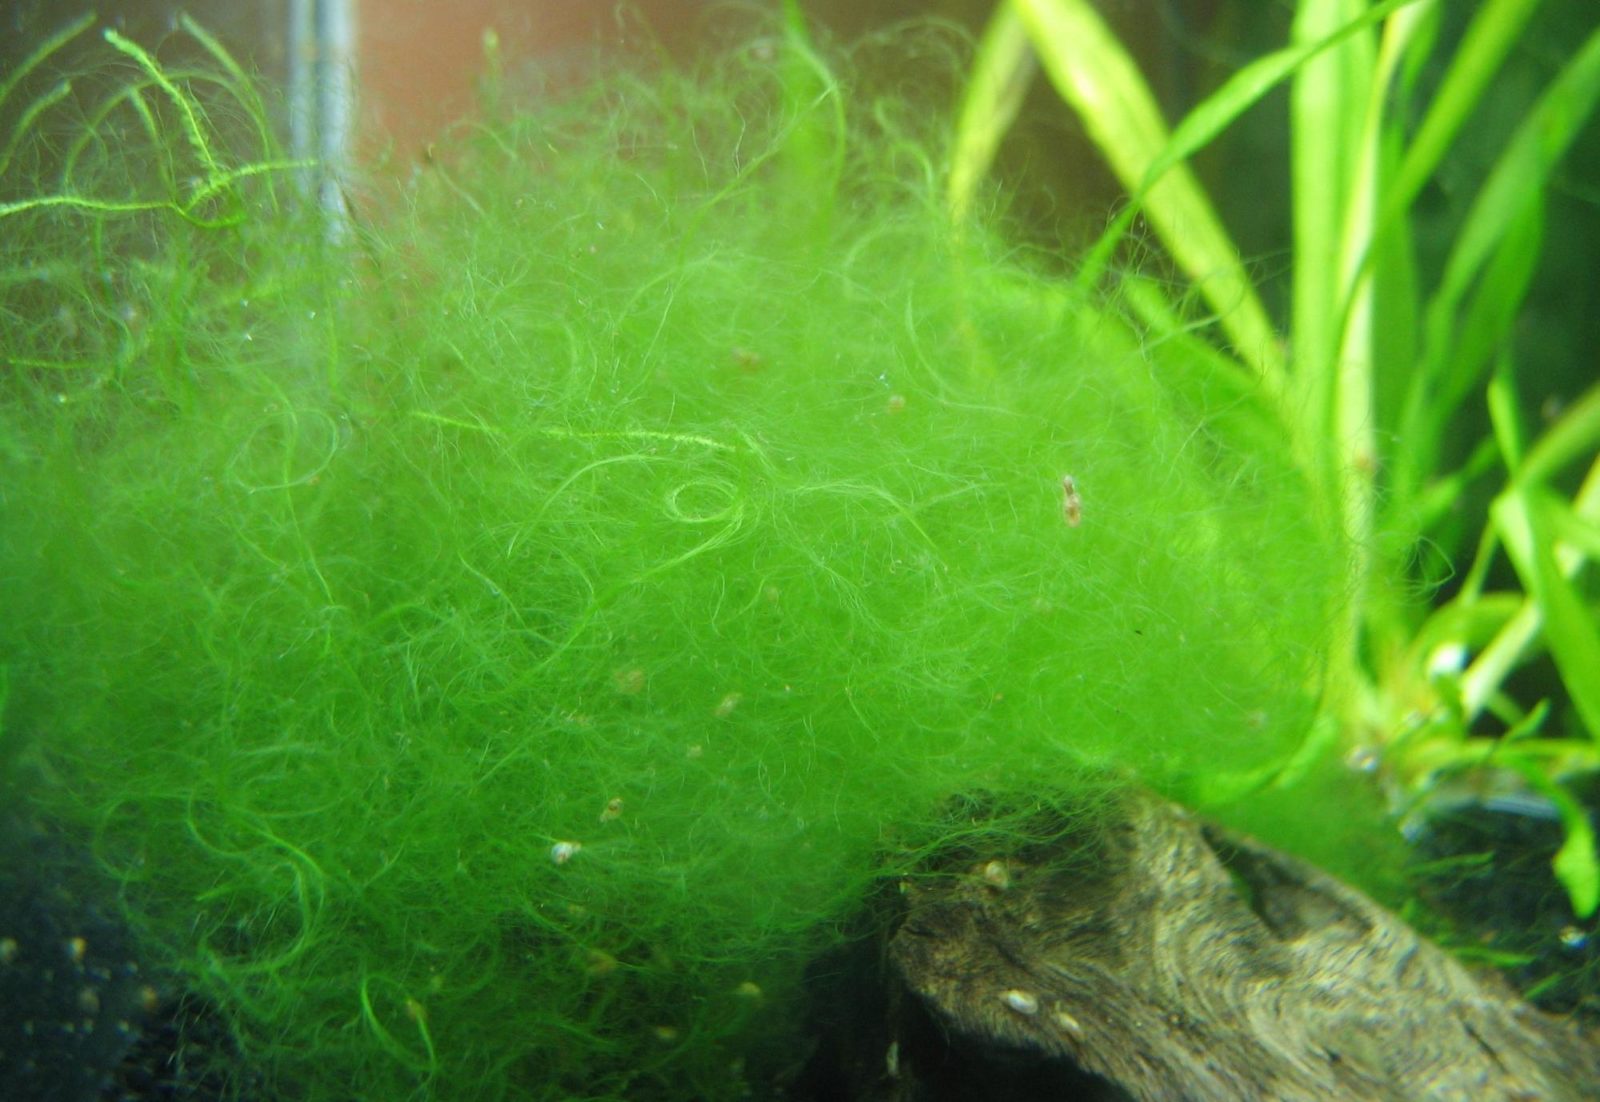 Нитчатые водоросли в аквариуме,как бороться-описание,фото,видео.